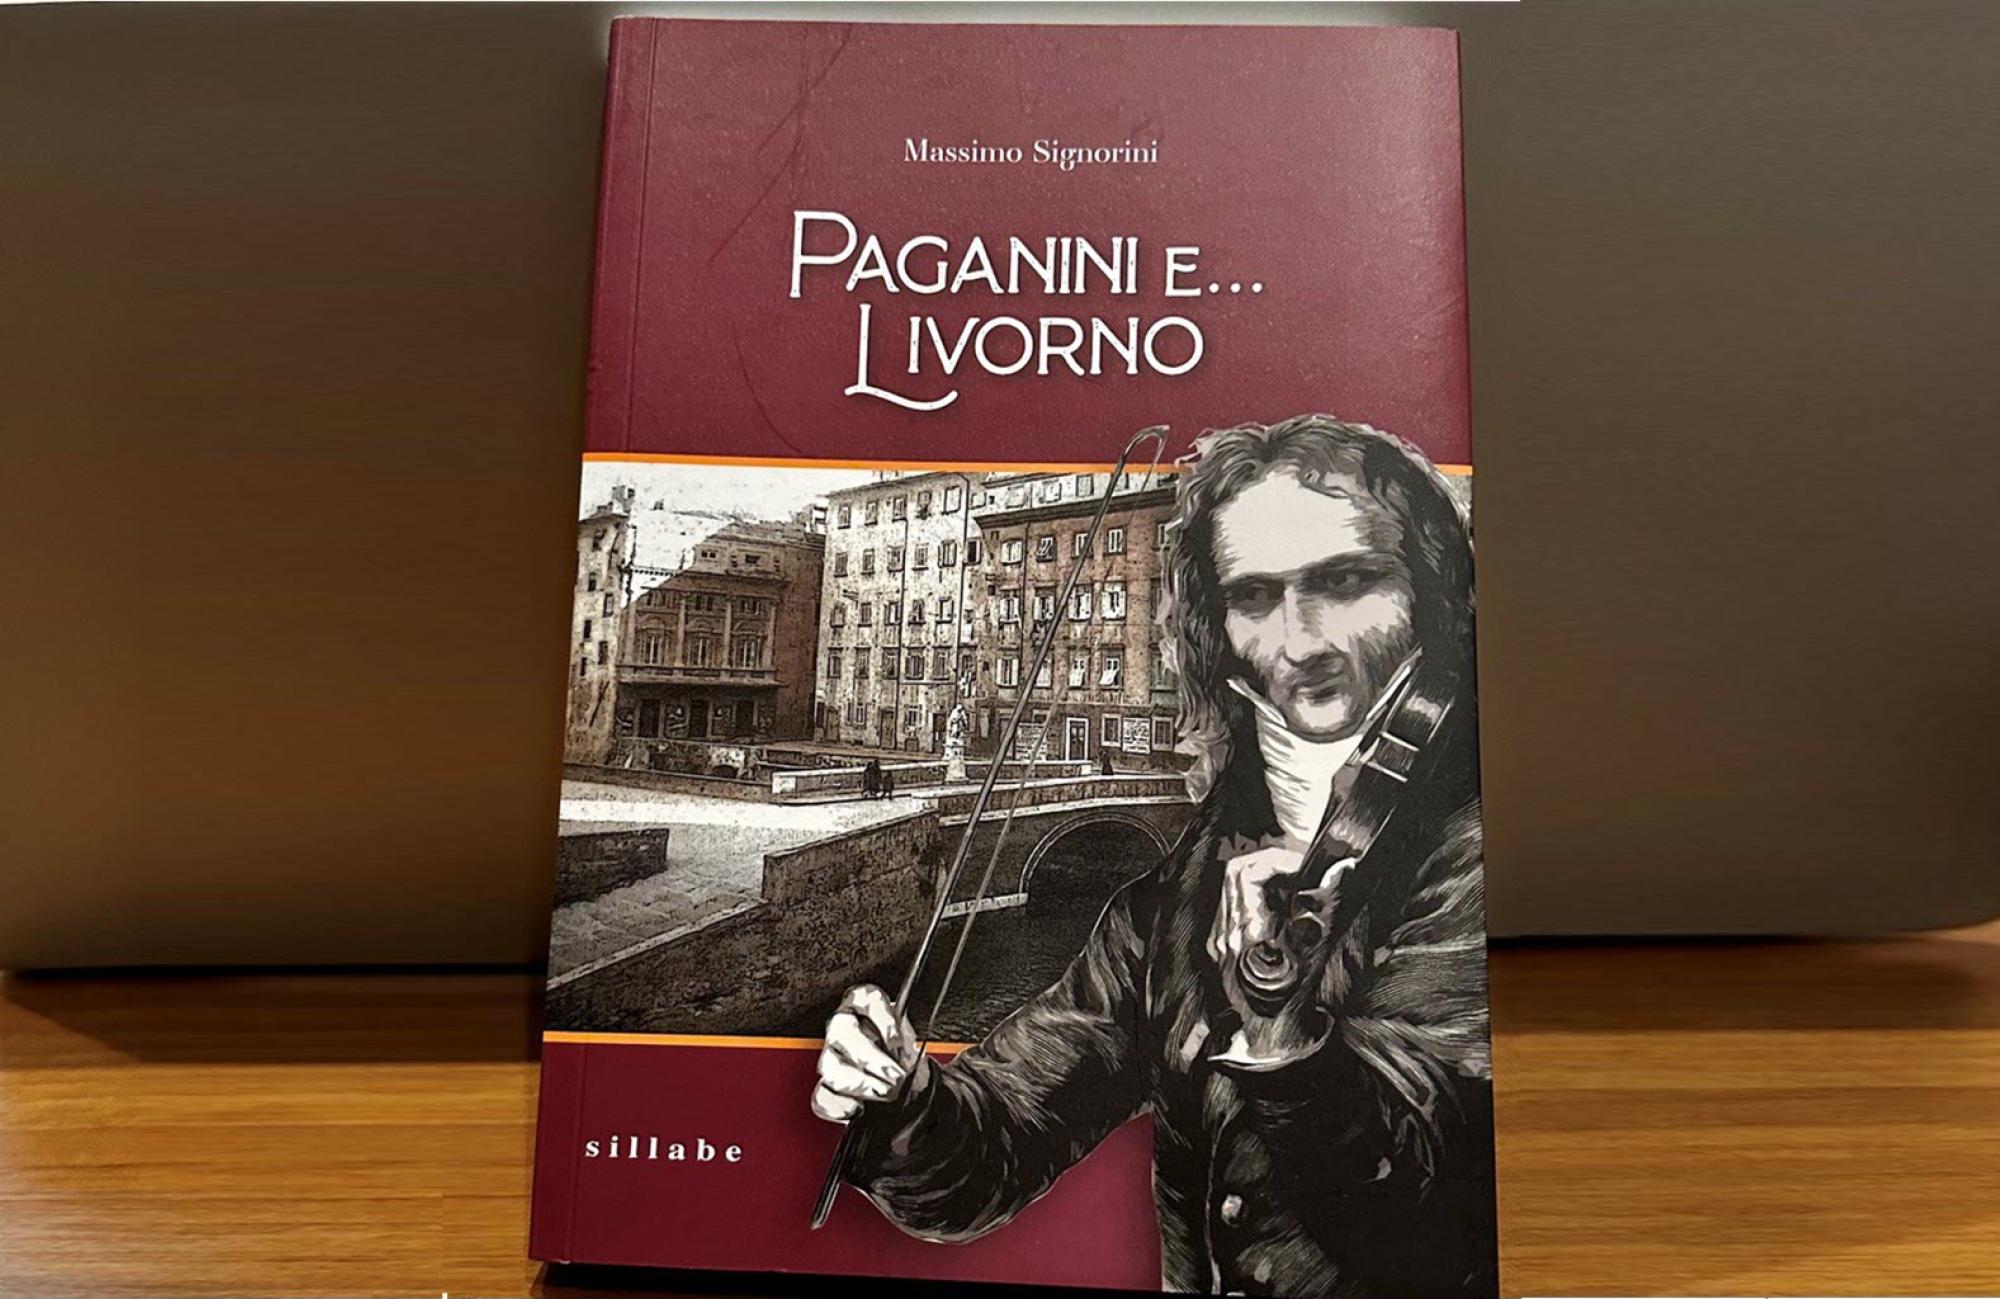 La copertina del libro Paganini e... Livorno